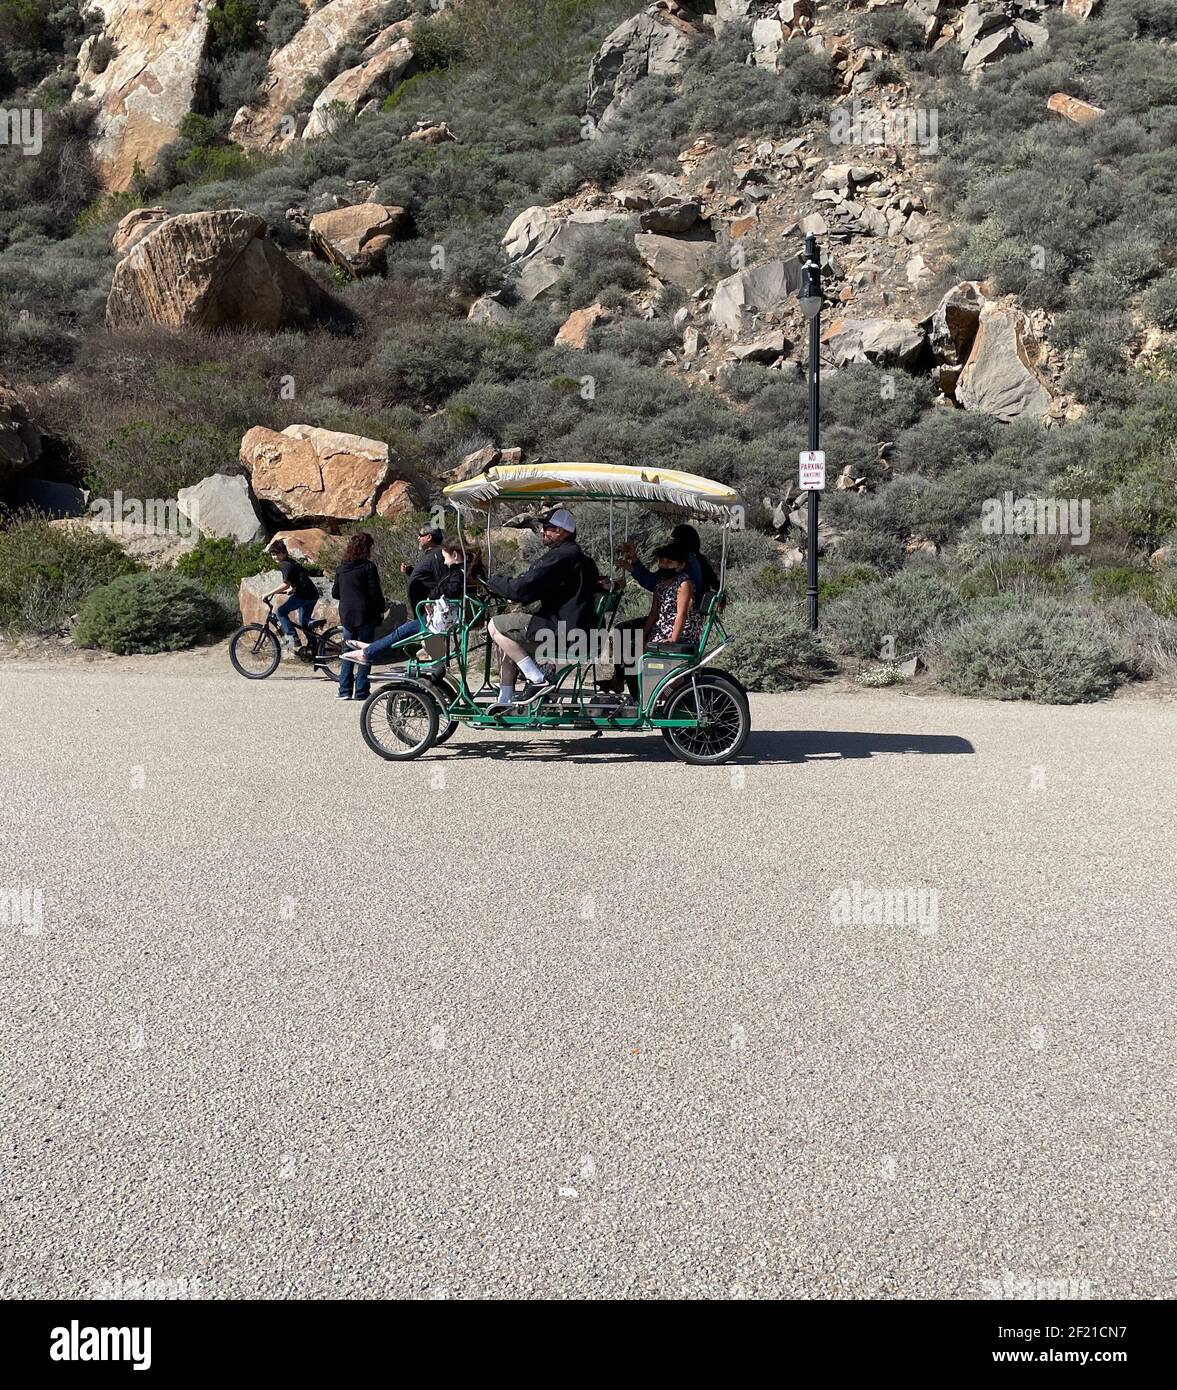 FRESNO, ÉTATS-UNIS - 28 févr. 2021: Une photo d'une famille dans un chariot vert à quatre roues de pédalos portant des masques faciaux pendant COVID en mars 2021 à l'été Banque D'Images